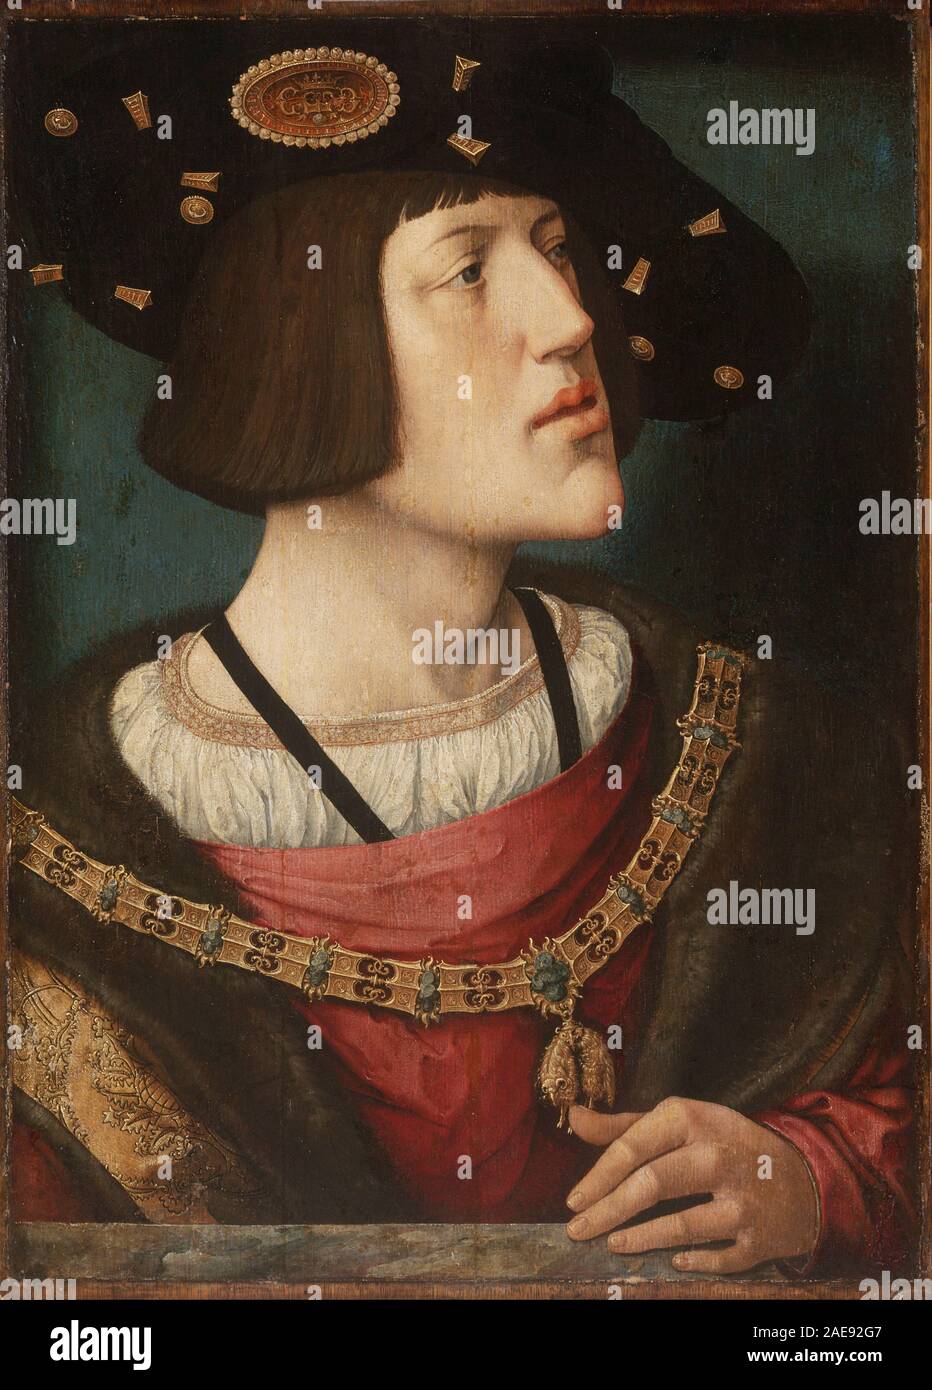 Charles V, (1500 - 1558) le saint empereur romain et de l'Archiduc d'Autriche de 1519, roi d'Espagne (Castille et Aragon, comme Charles I) à partir de 1516, et Seigneur des Pays-Bas le titre Duc de Bourgogne de 1506. Maison de Hasburg. Portrait de Charles V, 1519 par Bernard van Orley Banque D'Images